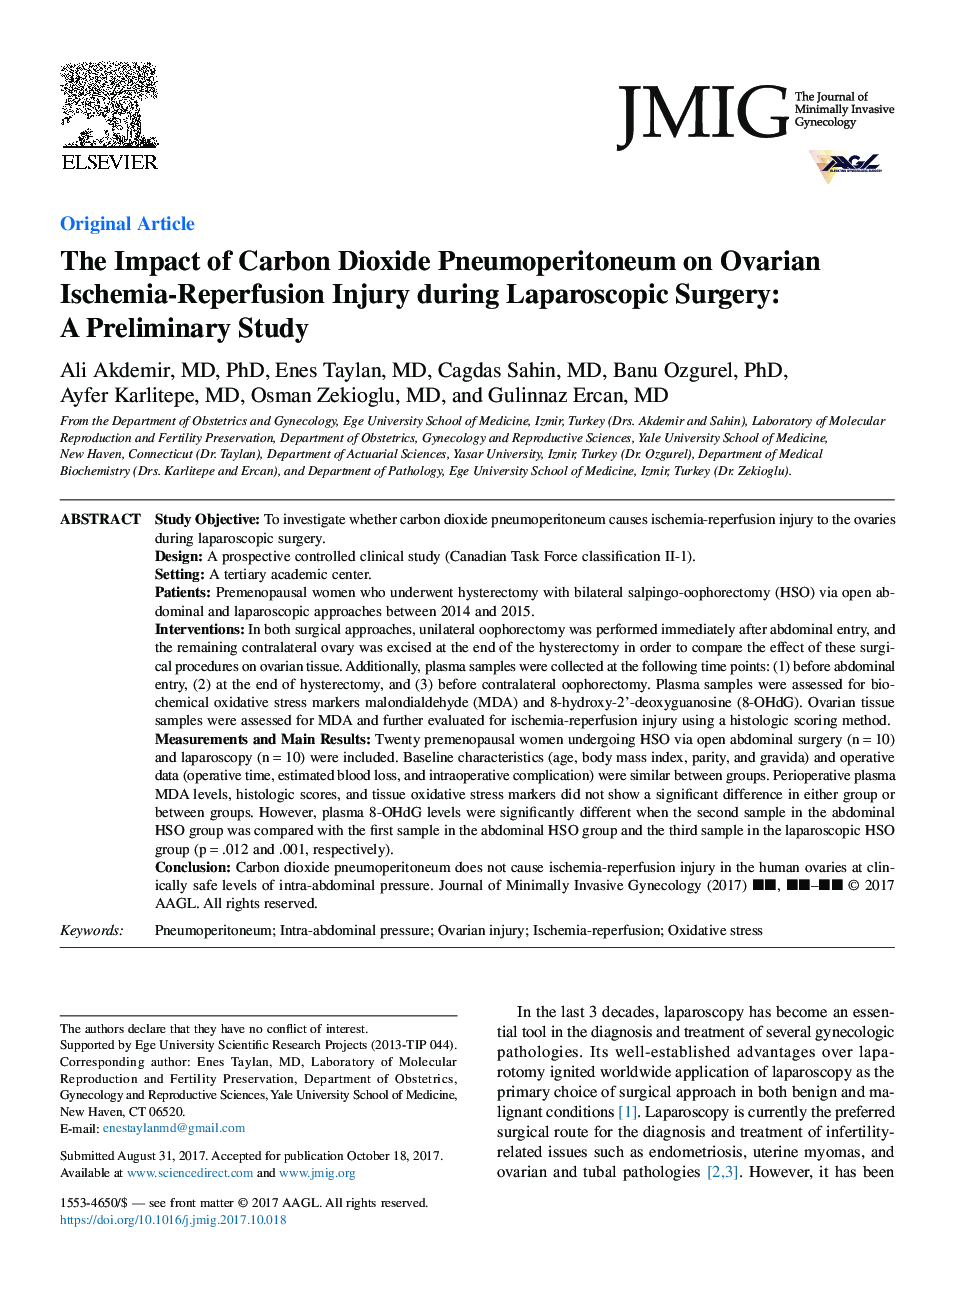 تأثیر پنیوپیریتونوم دی اکسید کربن بر آسیب شناسی ایسکمی- مجدد تخمدان در جراحی لاپاروسکوپی: مطالعه مقدماتی 